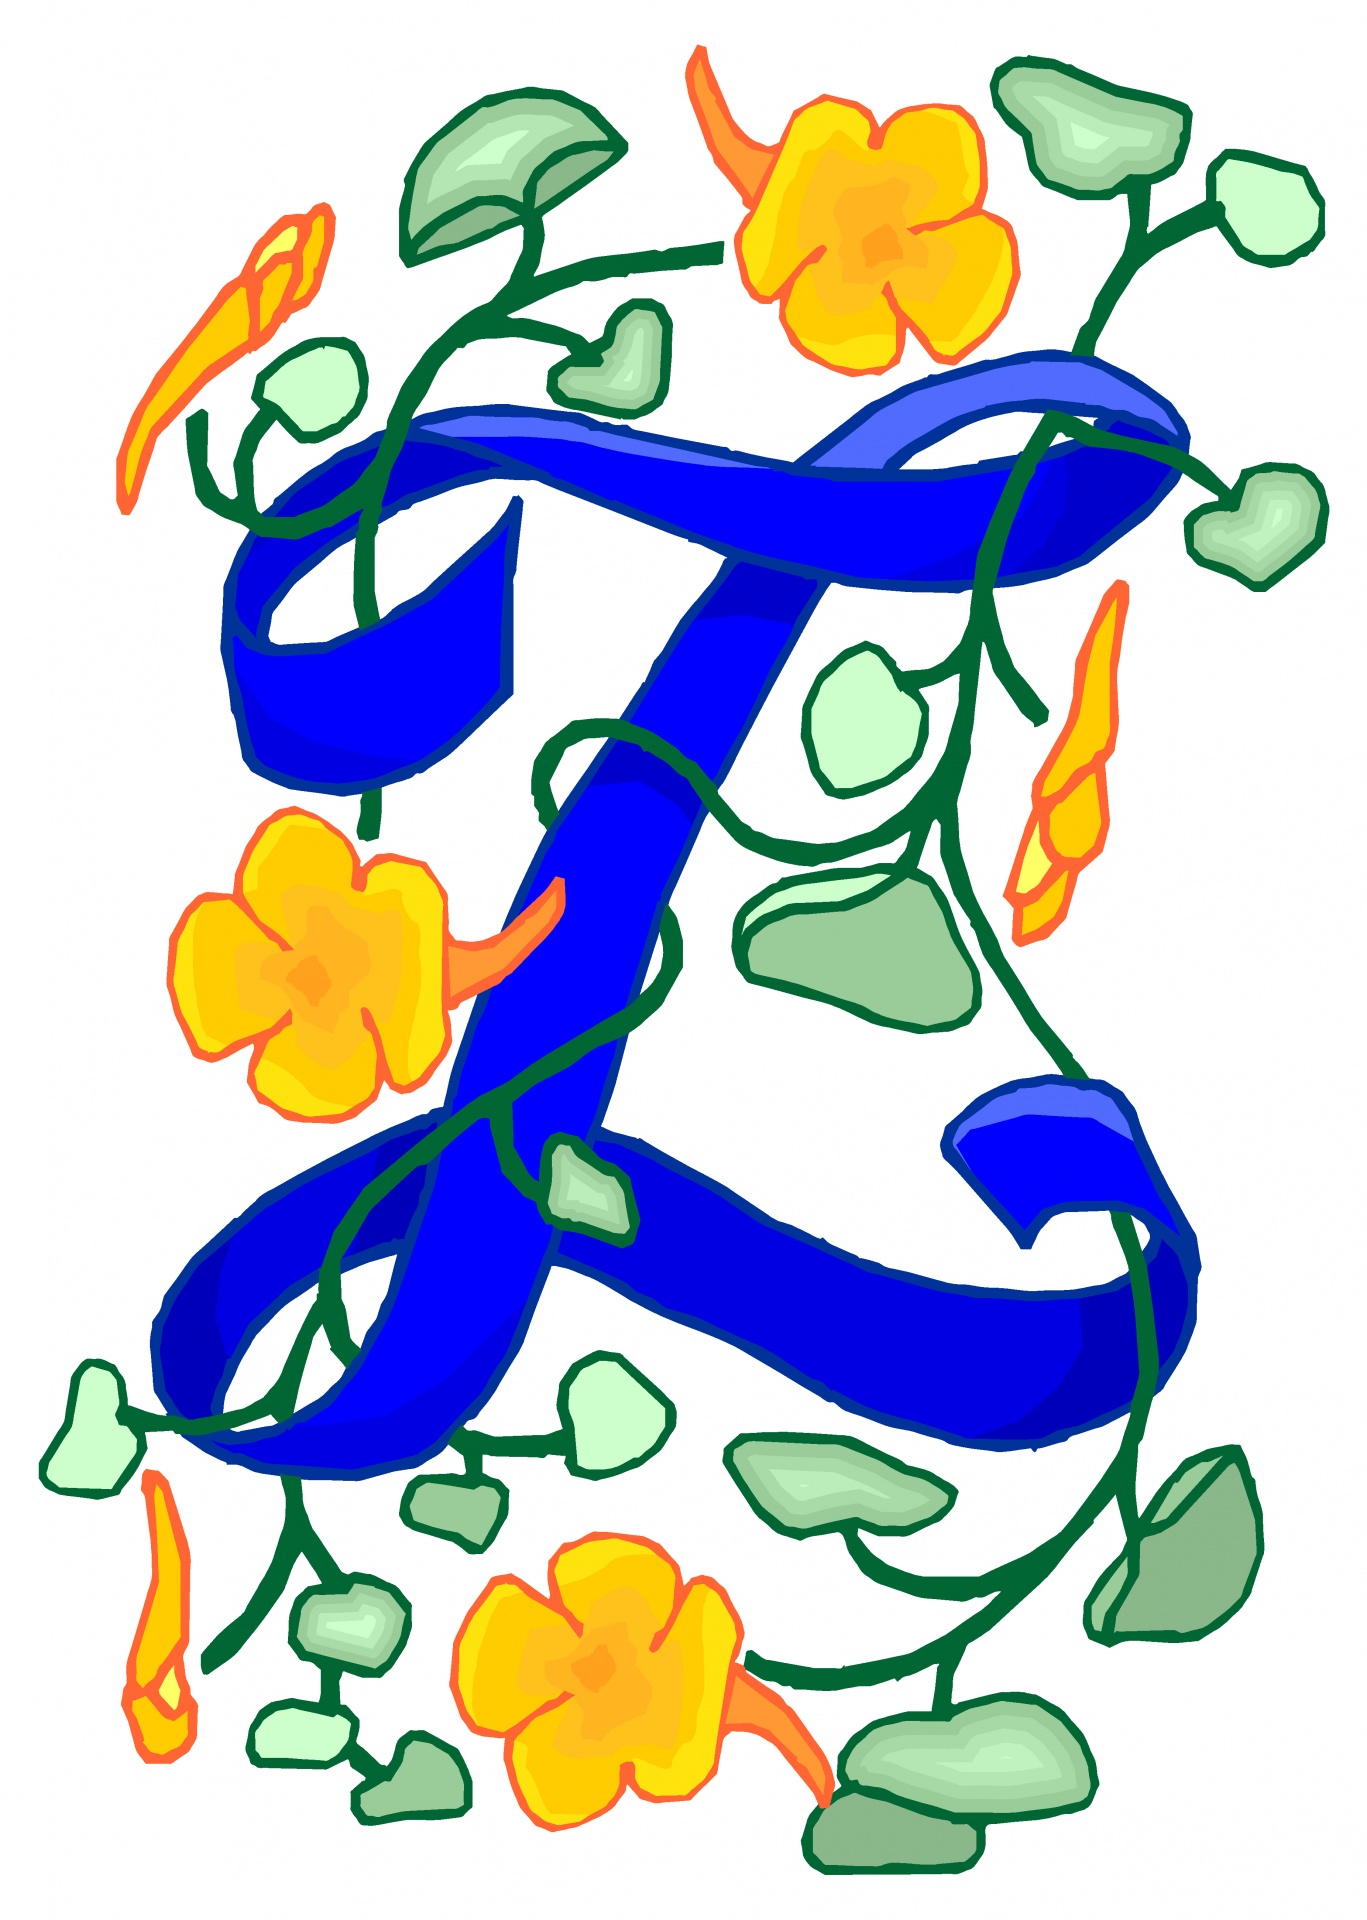 Florido azul da letra Z